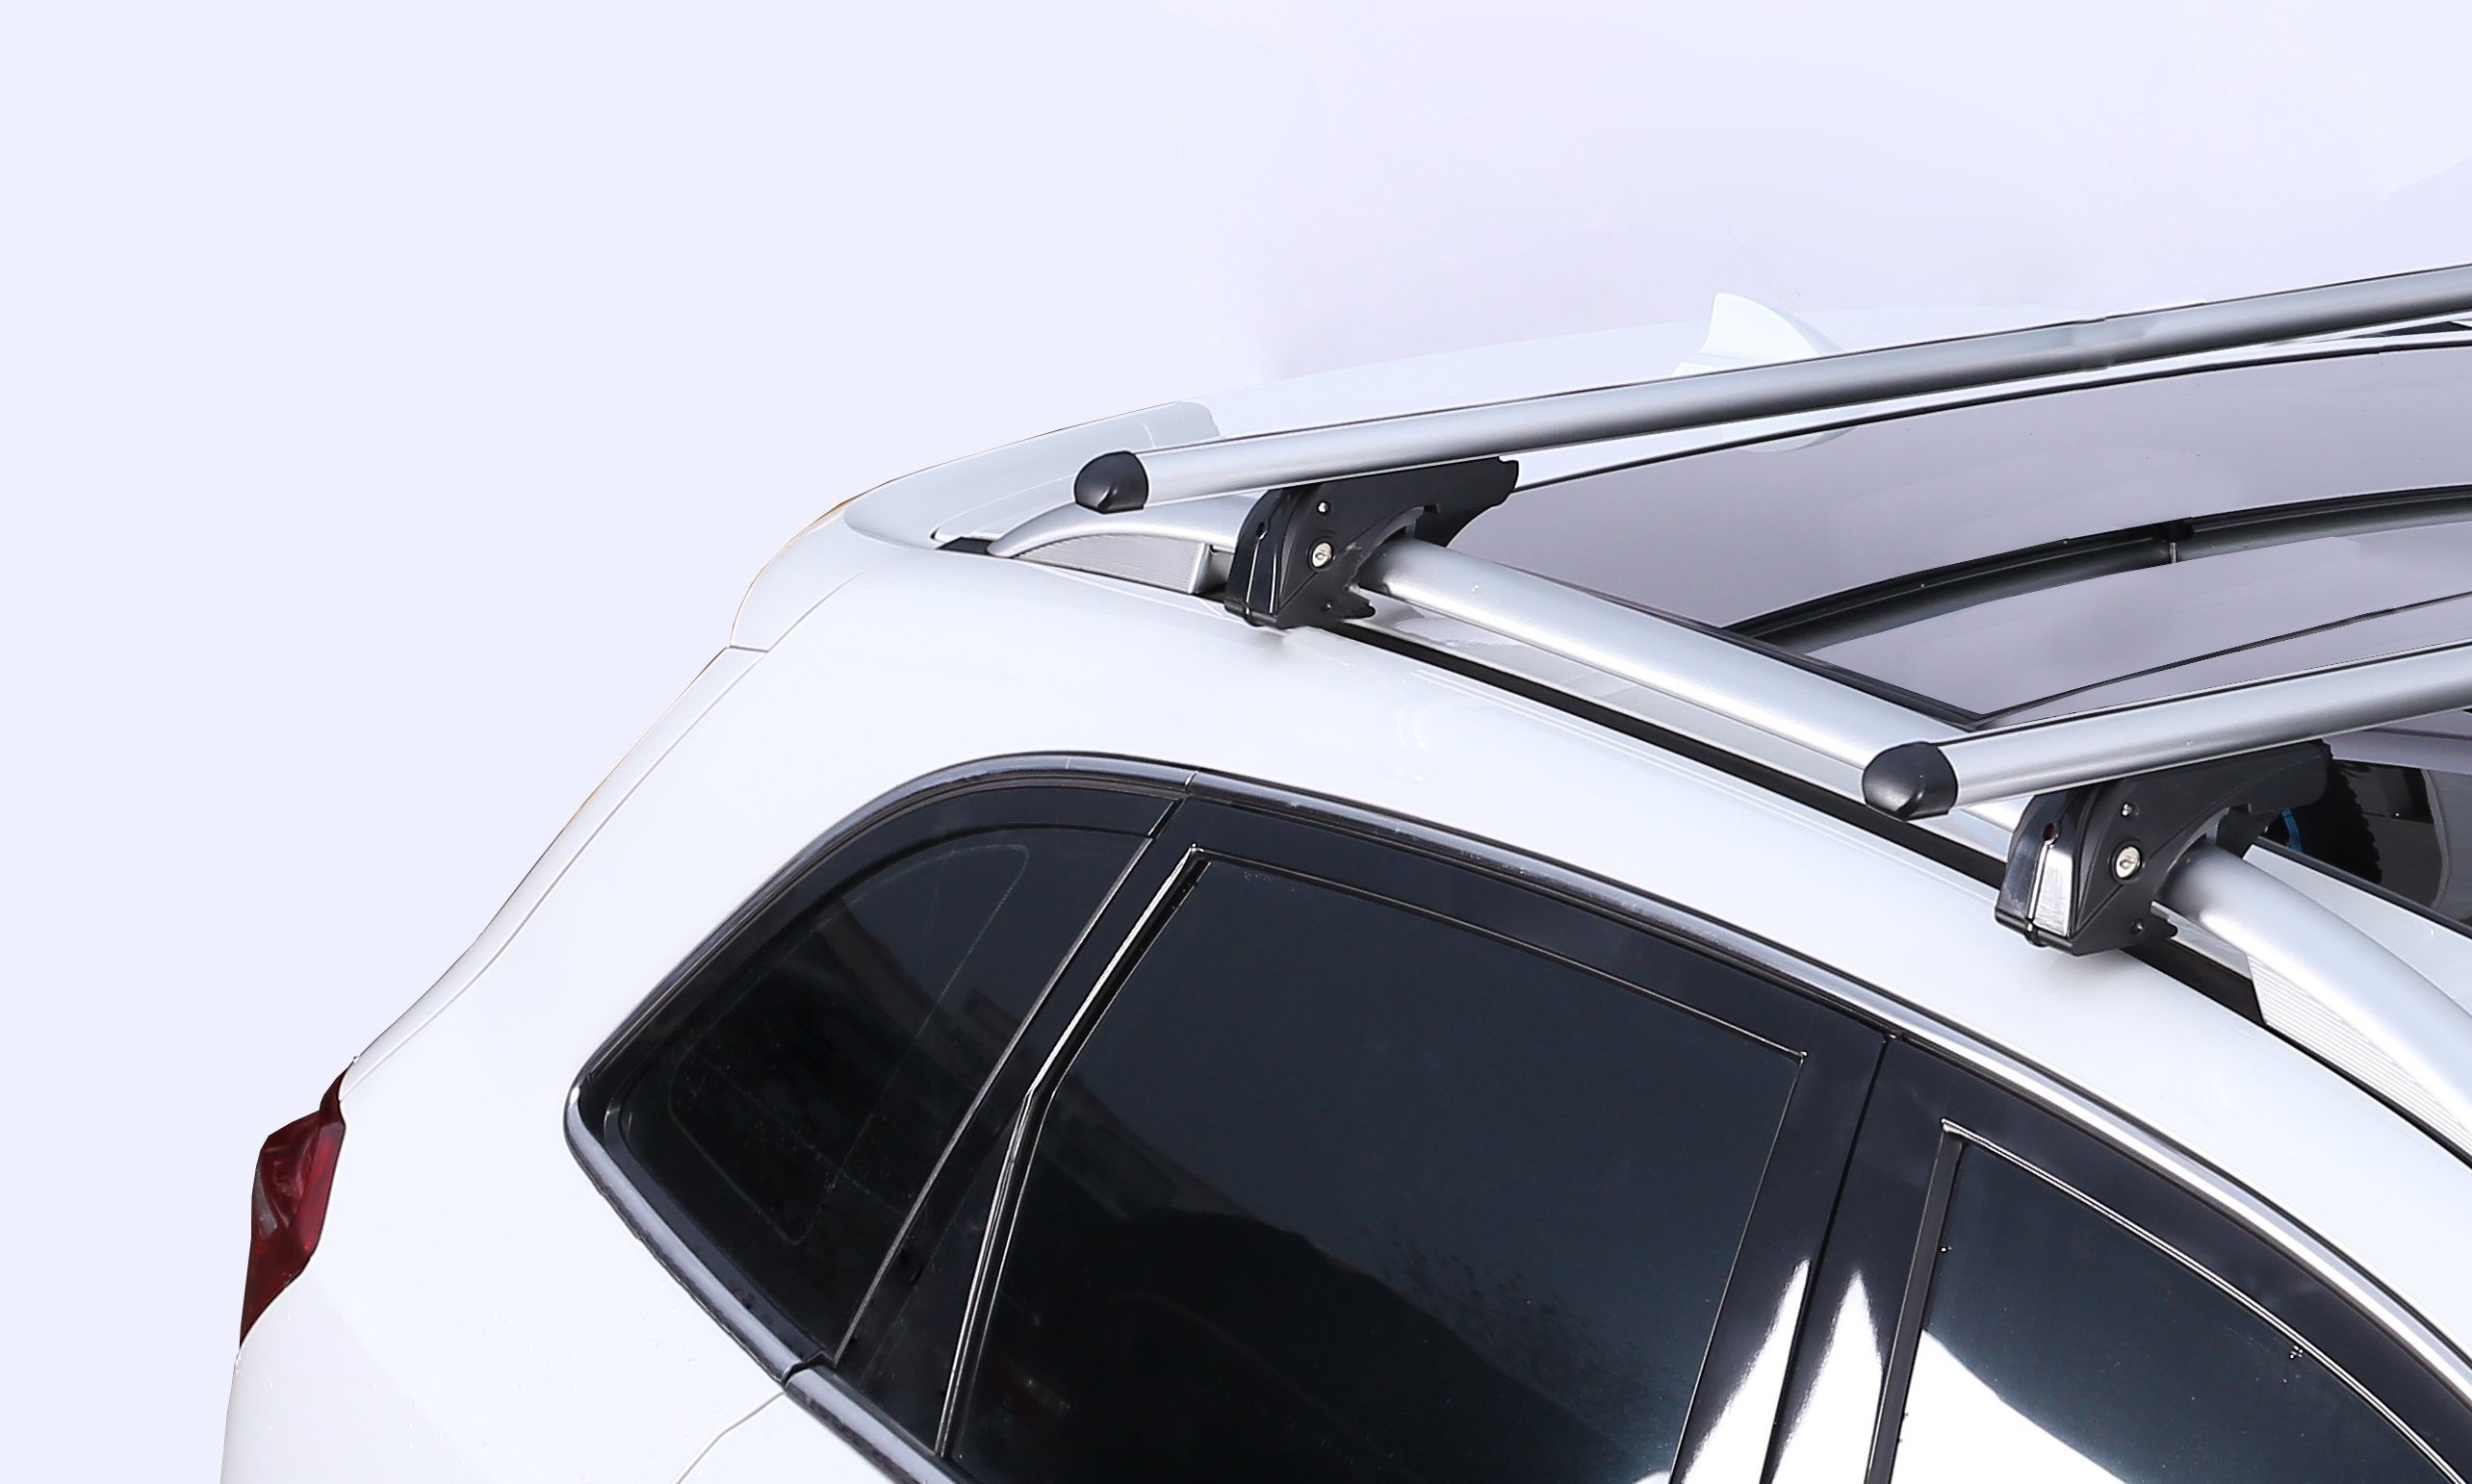 VDP Dachbox, (Für Ihren Station und Dachträger 93-00 Dachbox/Gepäckbox Türer) CUBE470 Ford (5 Mondeo Mondeo VDPLION1 Wagon Türer) im Ford Dachbox Set), 93-00, Kombi Dachträger/Relingträger kompatibel (5 + mit